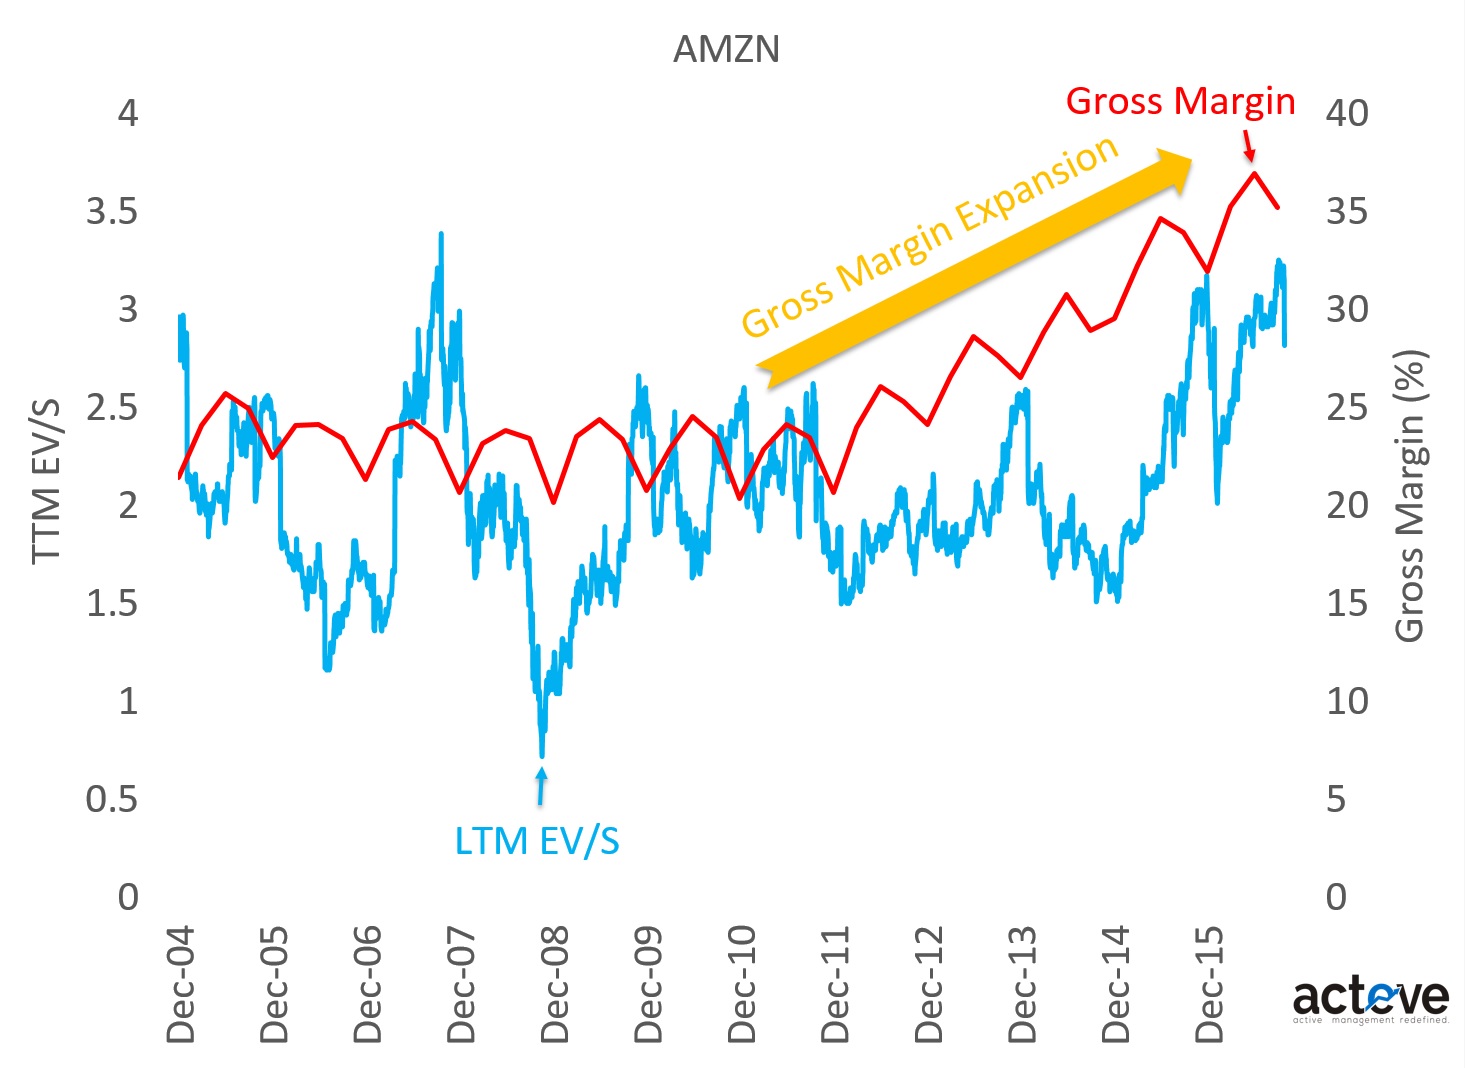 AMZN EV/S vs. Gross Margins